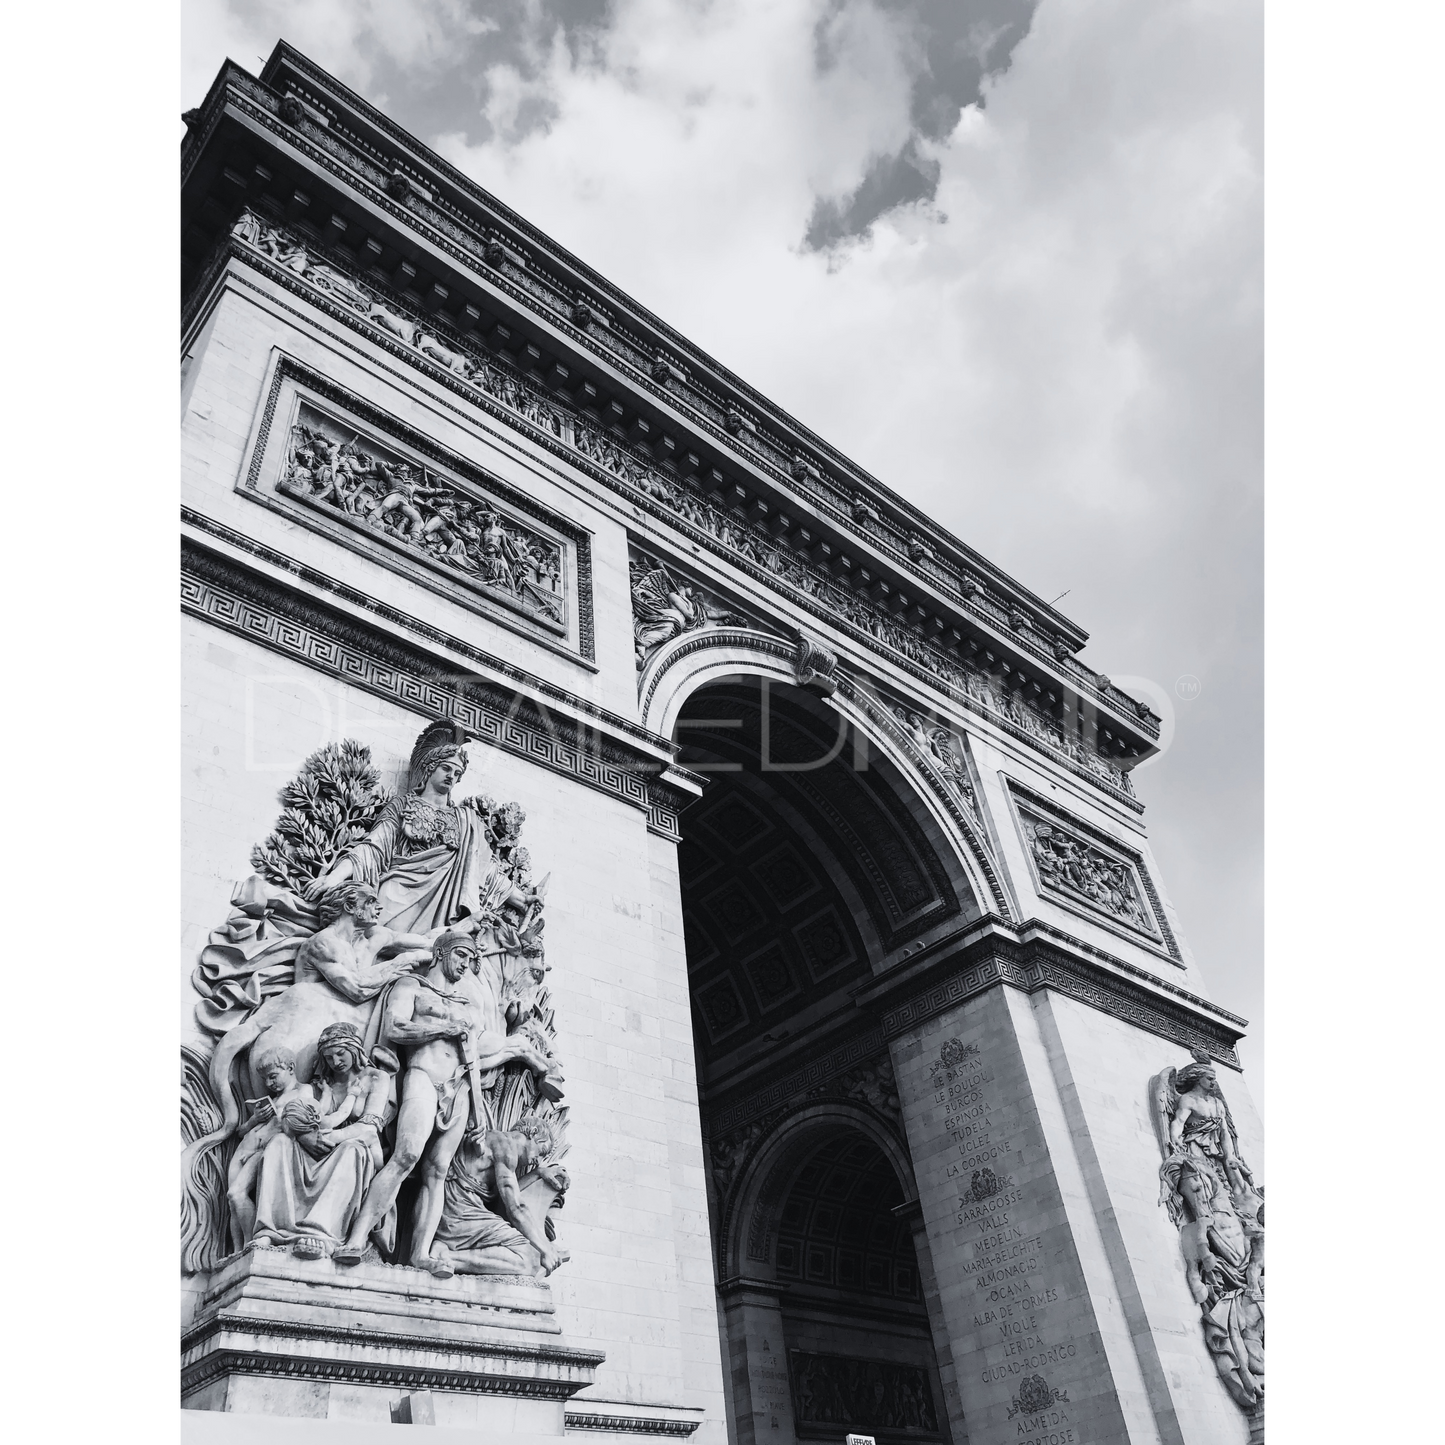 Λrc de Triomphe en Paris |PRINT|